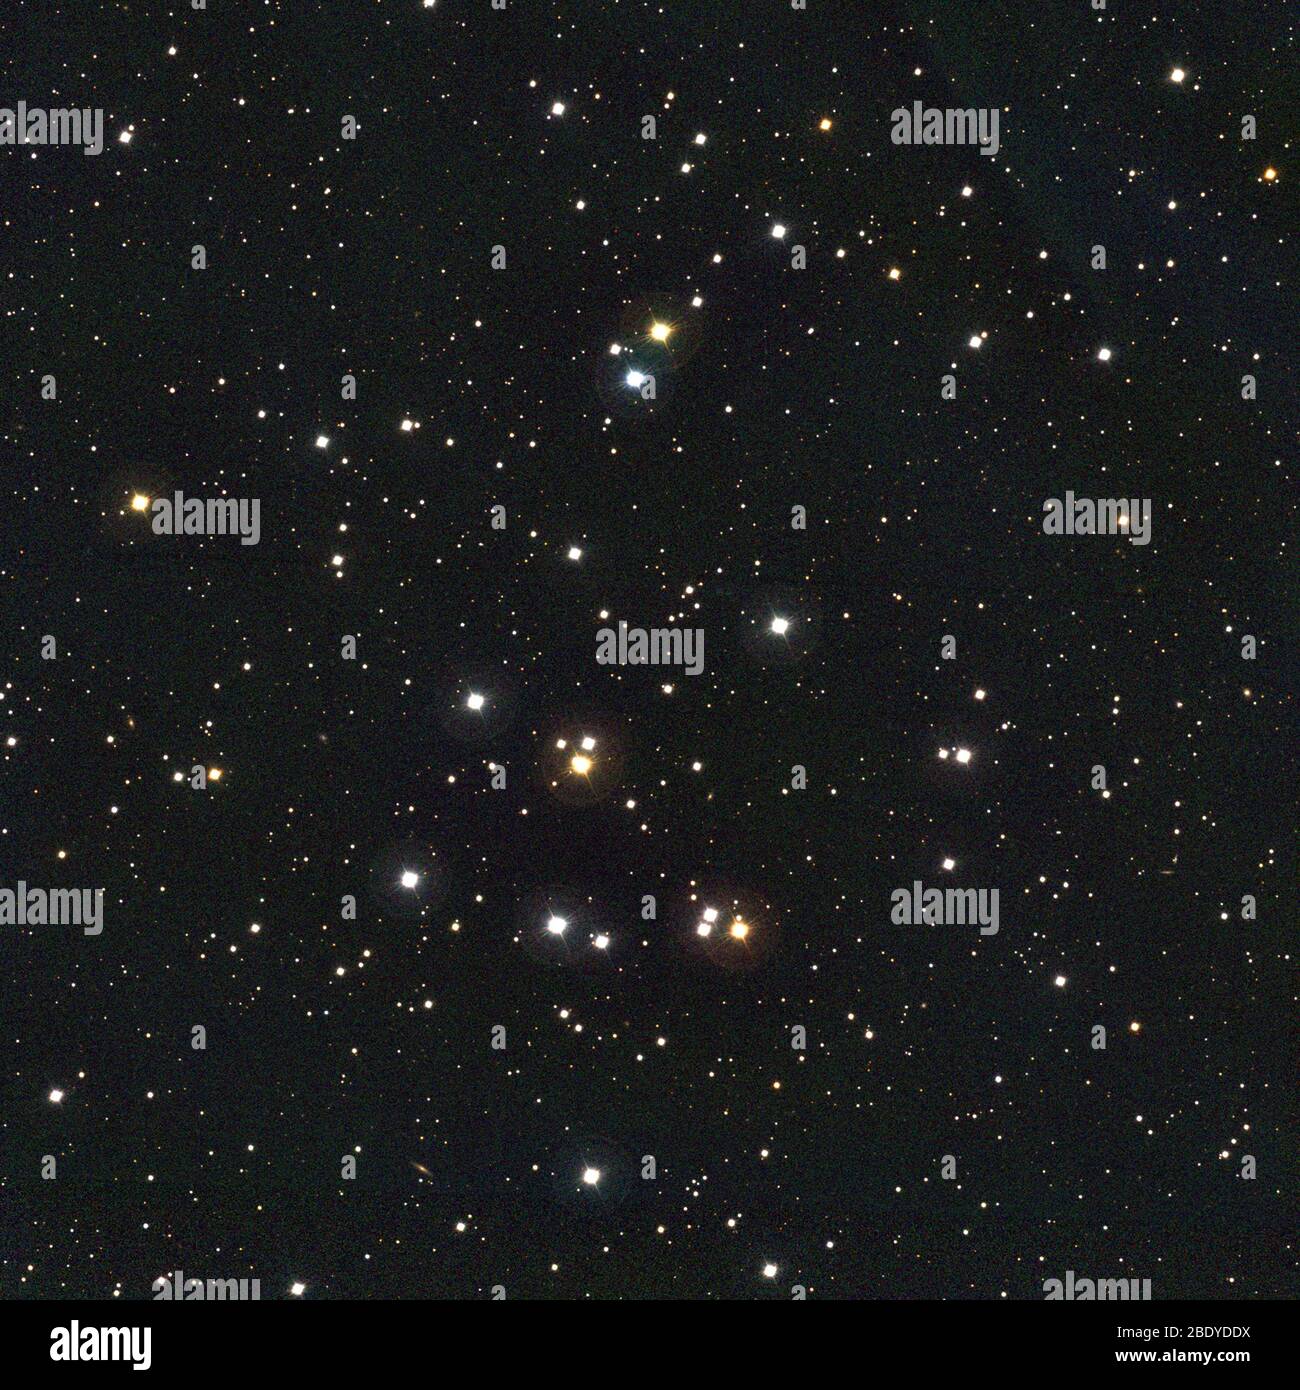 Bienenstock-Haufenhaufen, M44, NGC 2632, Cr 189 Stockfoto